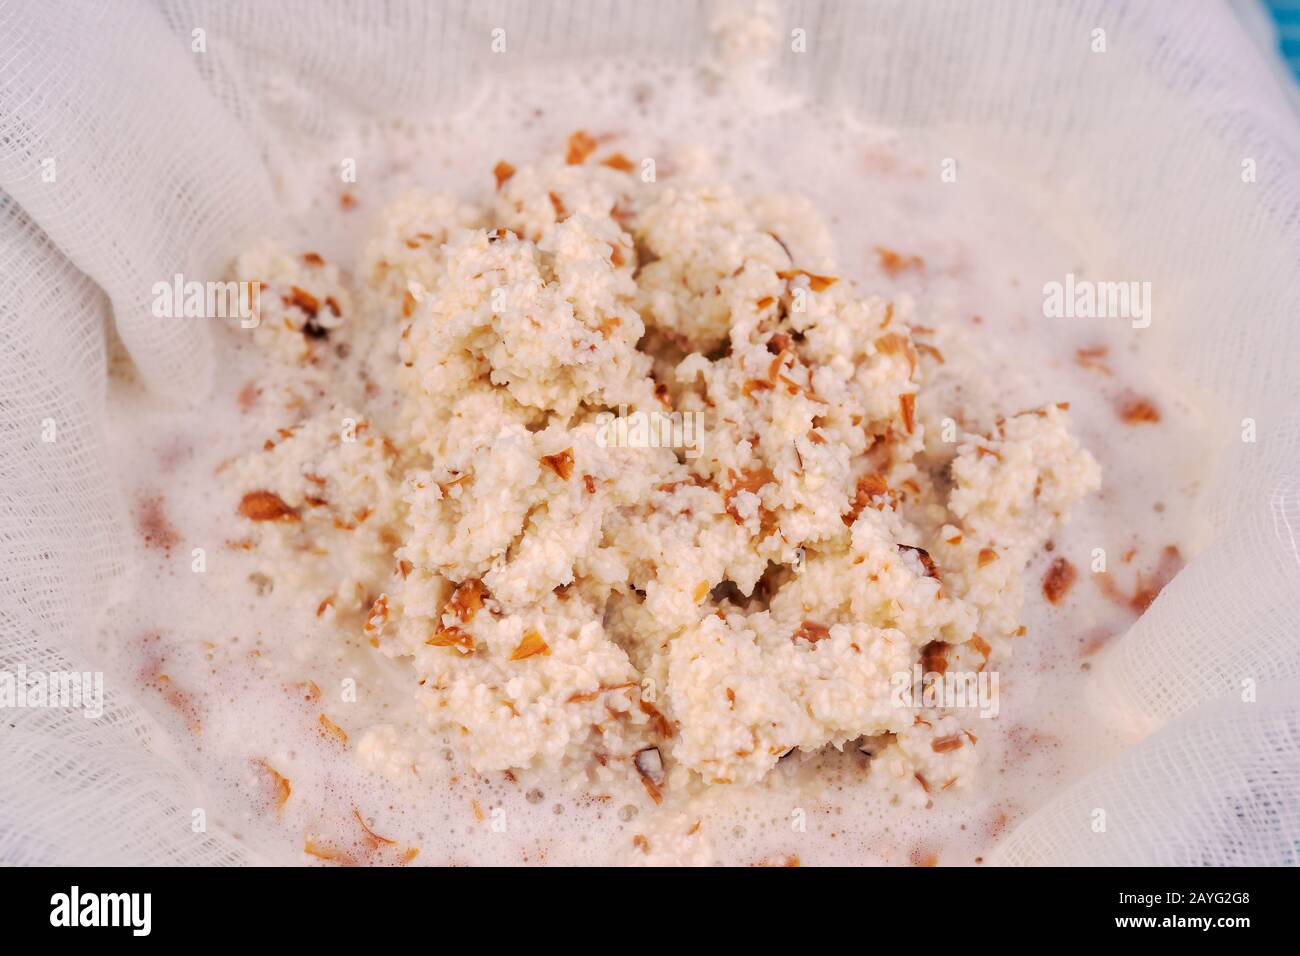 Mandelmilch kochen, Mandeln in einem Mixer zerkleinert, sind in weißen Gaze  zum Pressen Stockfotografie - Alamy